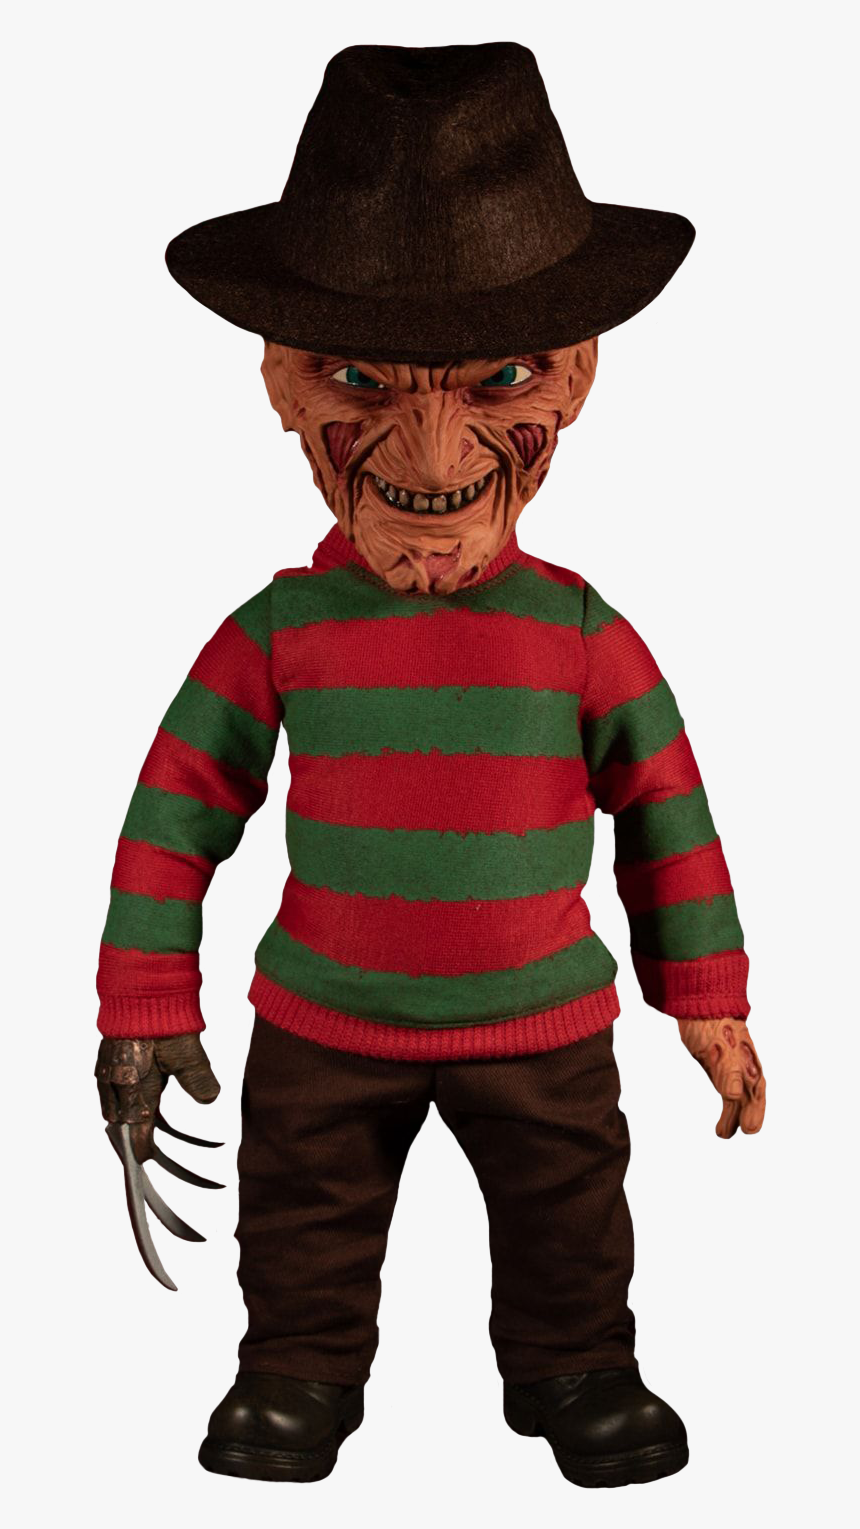 Transparent Freddy Krueger Png - Freddy Krueger Doll, Png Download, Free Download